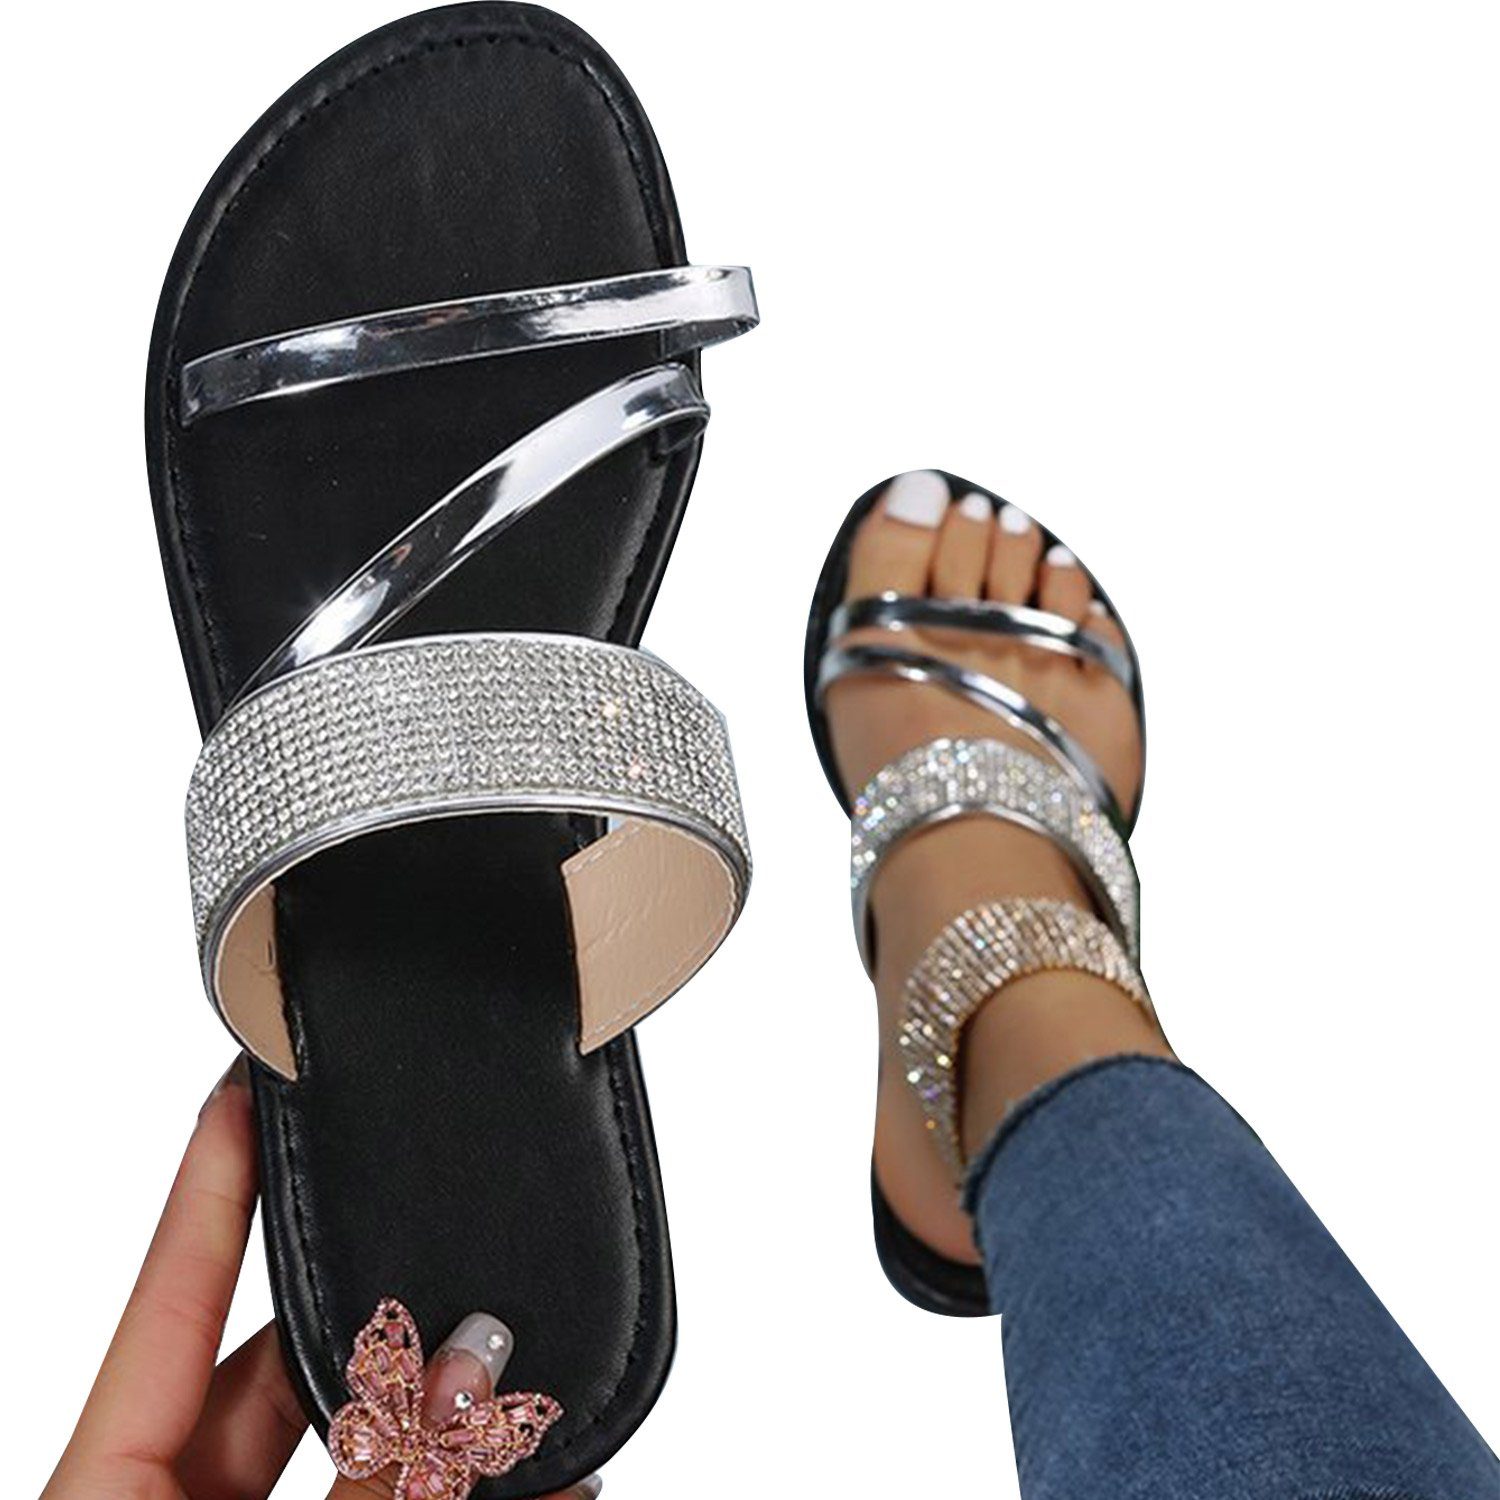 Silber Strass, mit Schwarz Mode lässige Sandale MAGICSHE Sandalen weiblich